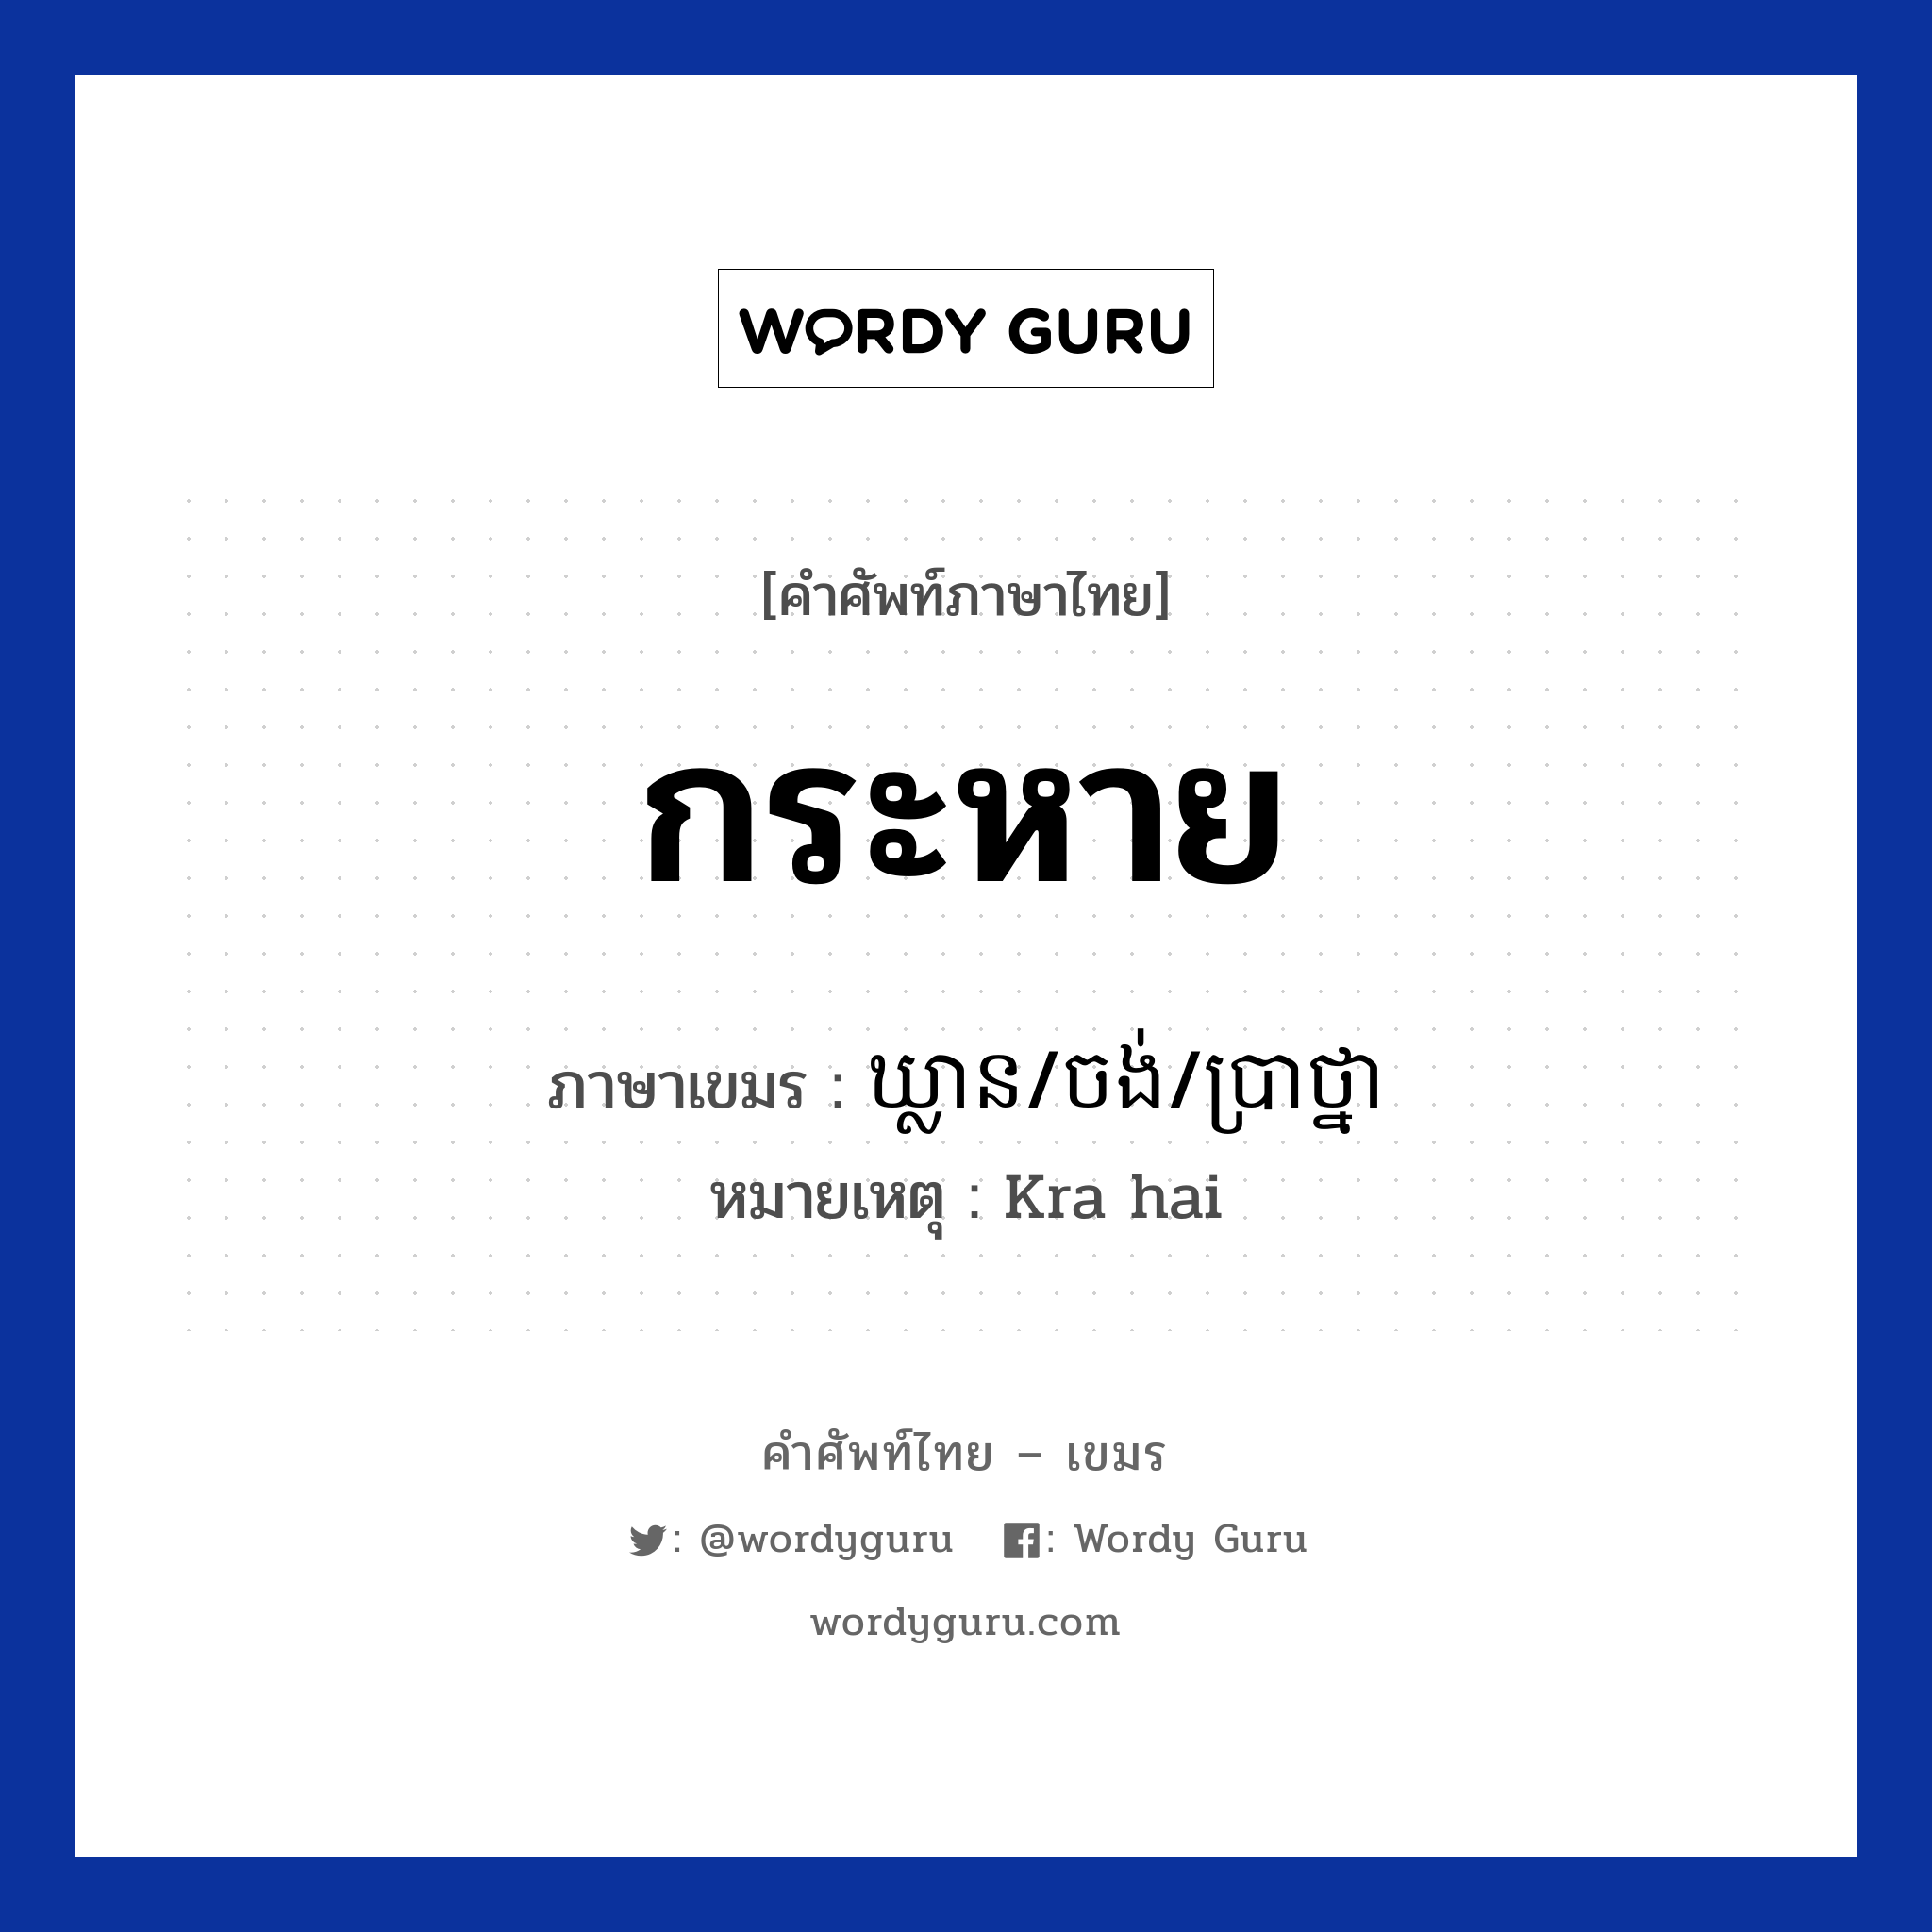 กระหาย ภาษาเขมรคืออะไร, คำศัพท์ภาษาไทย - เขมร กระหาย ภาษาเขมร ឃ្លាន/ចង់/ប្រាថ្នា หมวด ทักทาย หมายเหตุ Kra hai Klean/jong/bratna หมวด ทักทาย